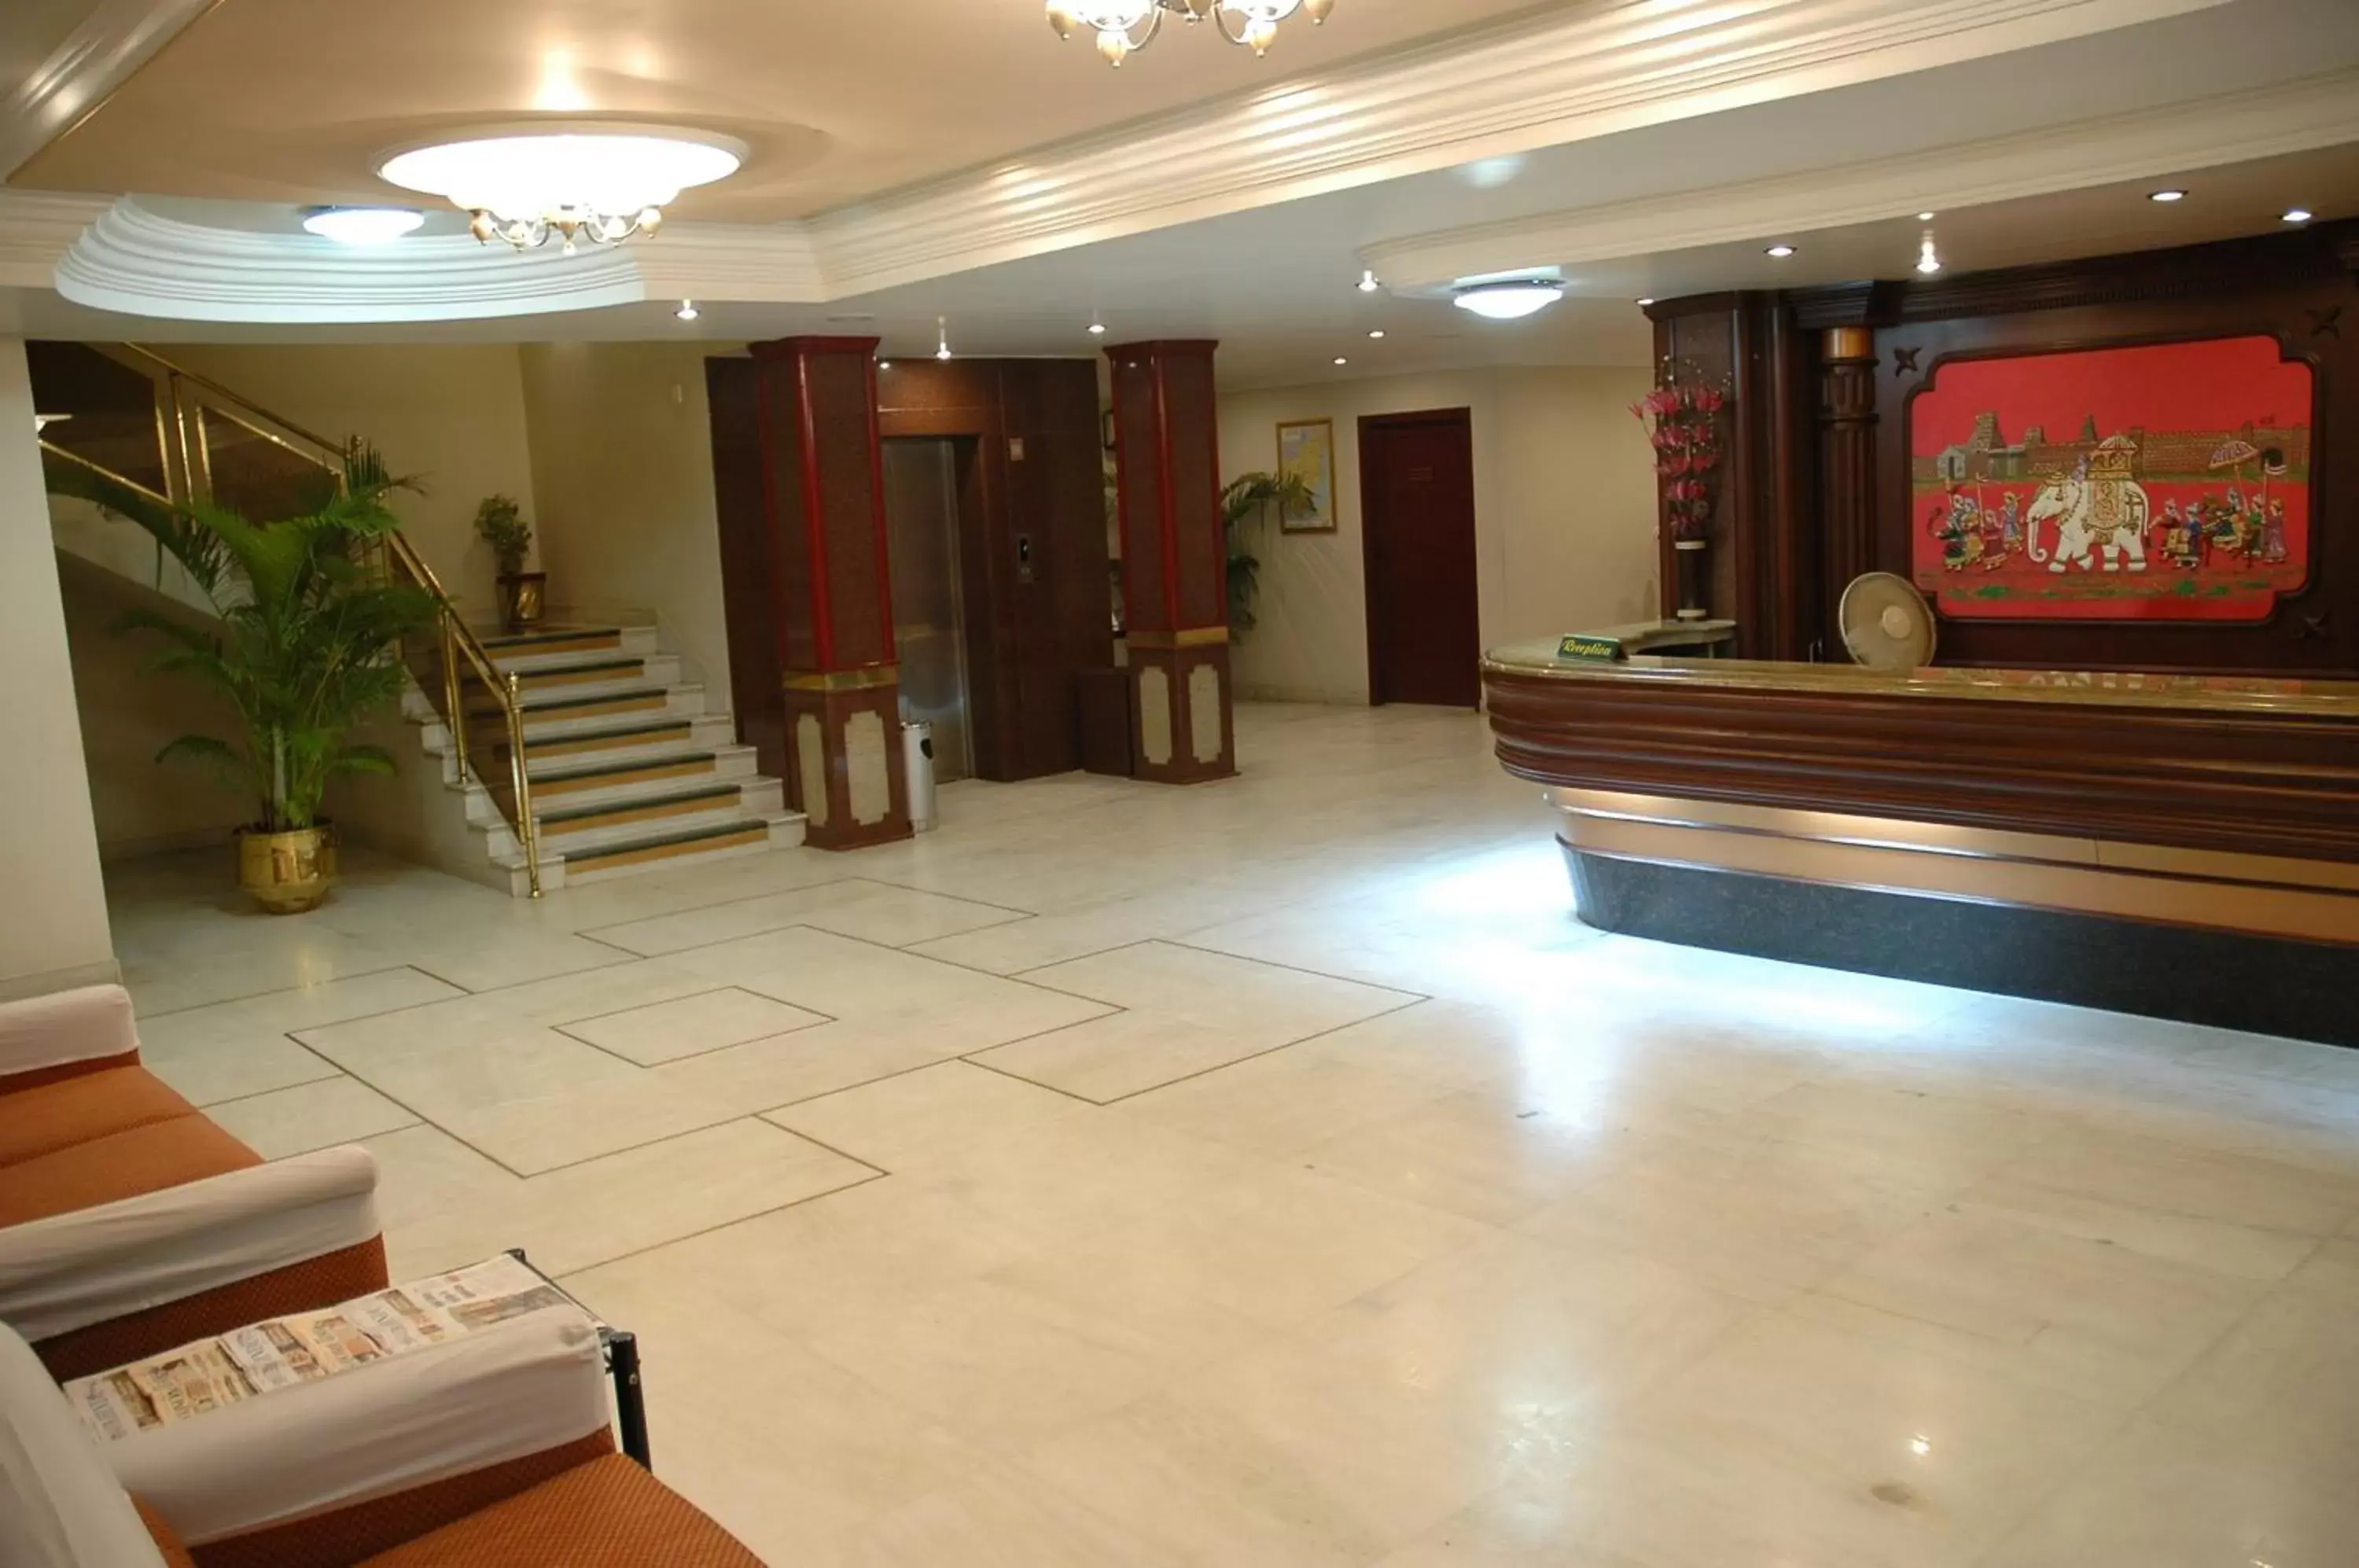 Lobby or reception, Lobby/Reception in Hotel Gnanam